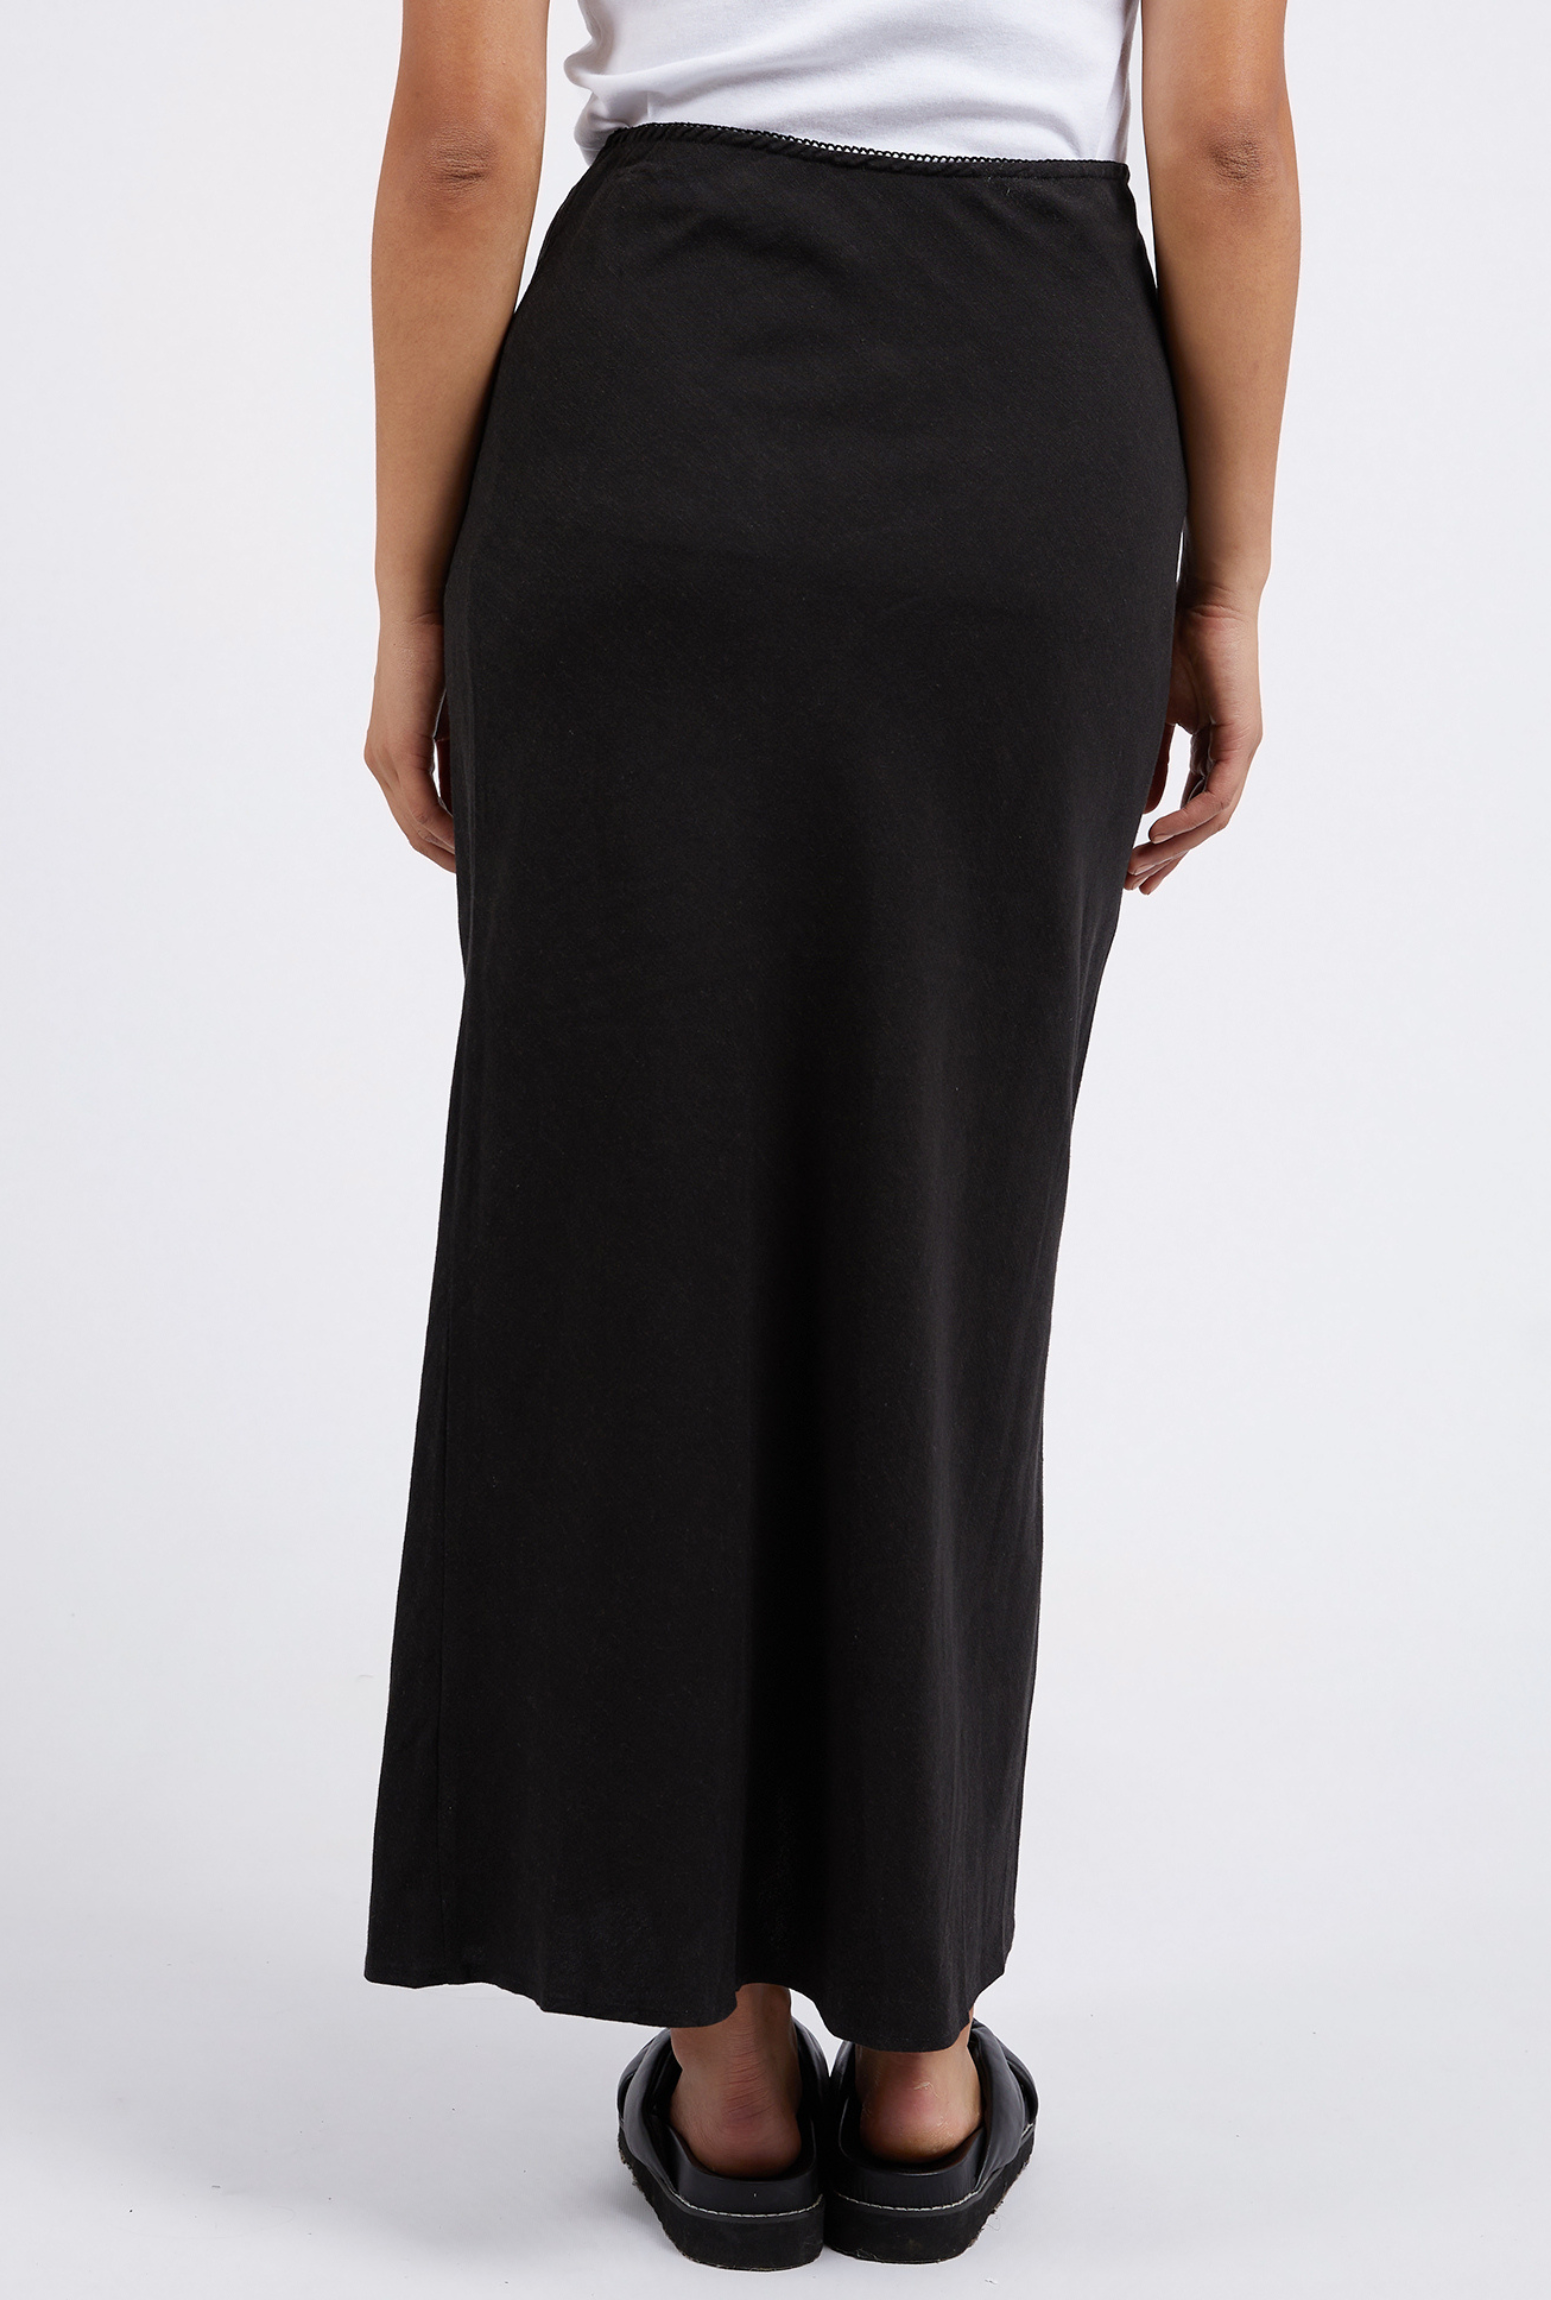 Foxwood Bronte Linen Skirt - Black